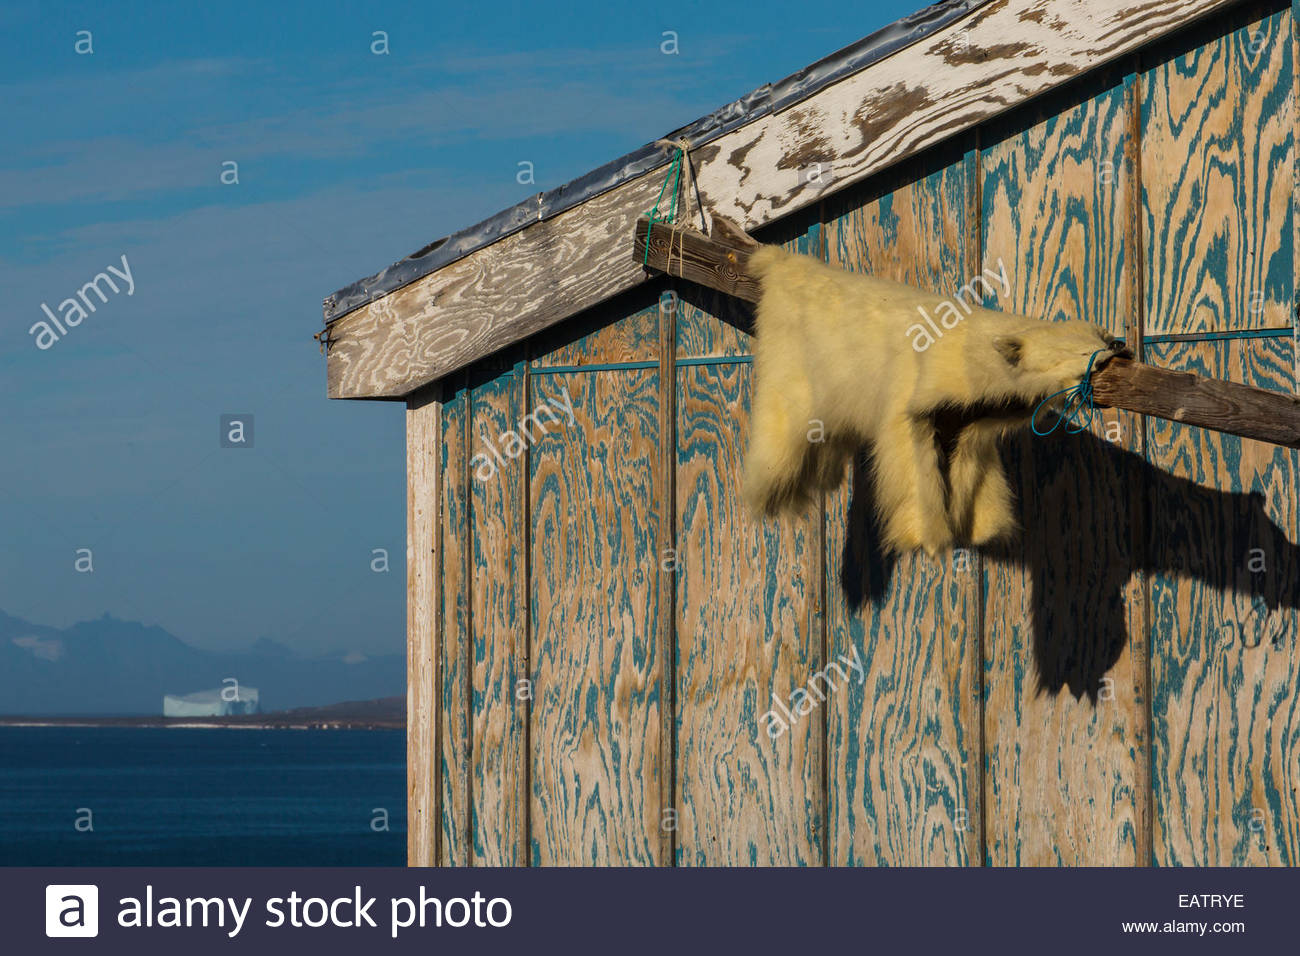 Ein Eisbär Fell hängt aus einem Amt in einem Indianerdorf. Stockfoto